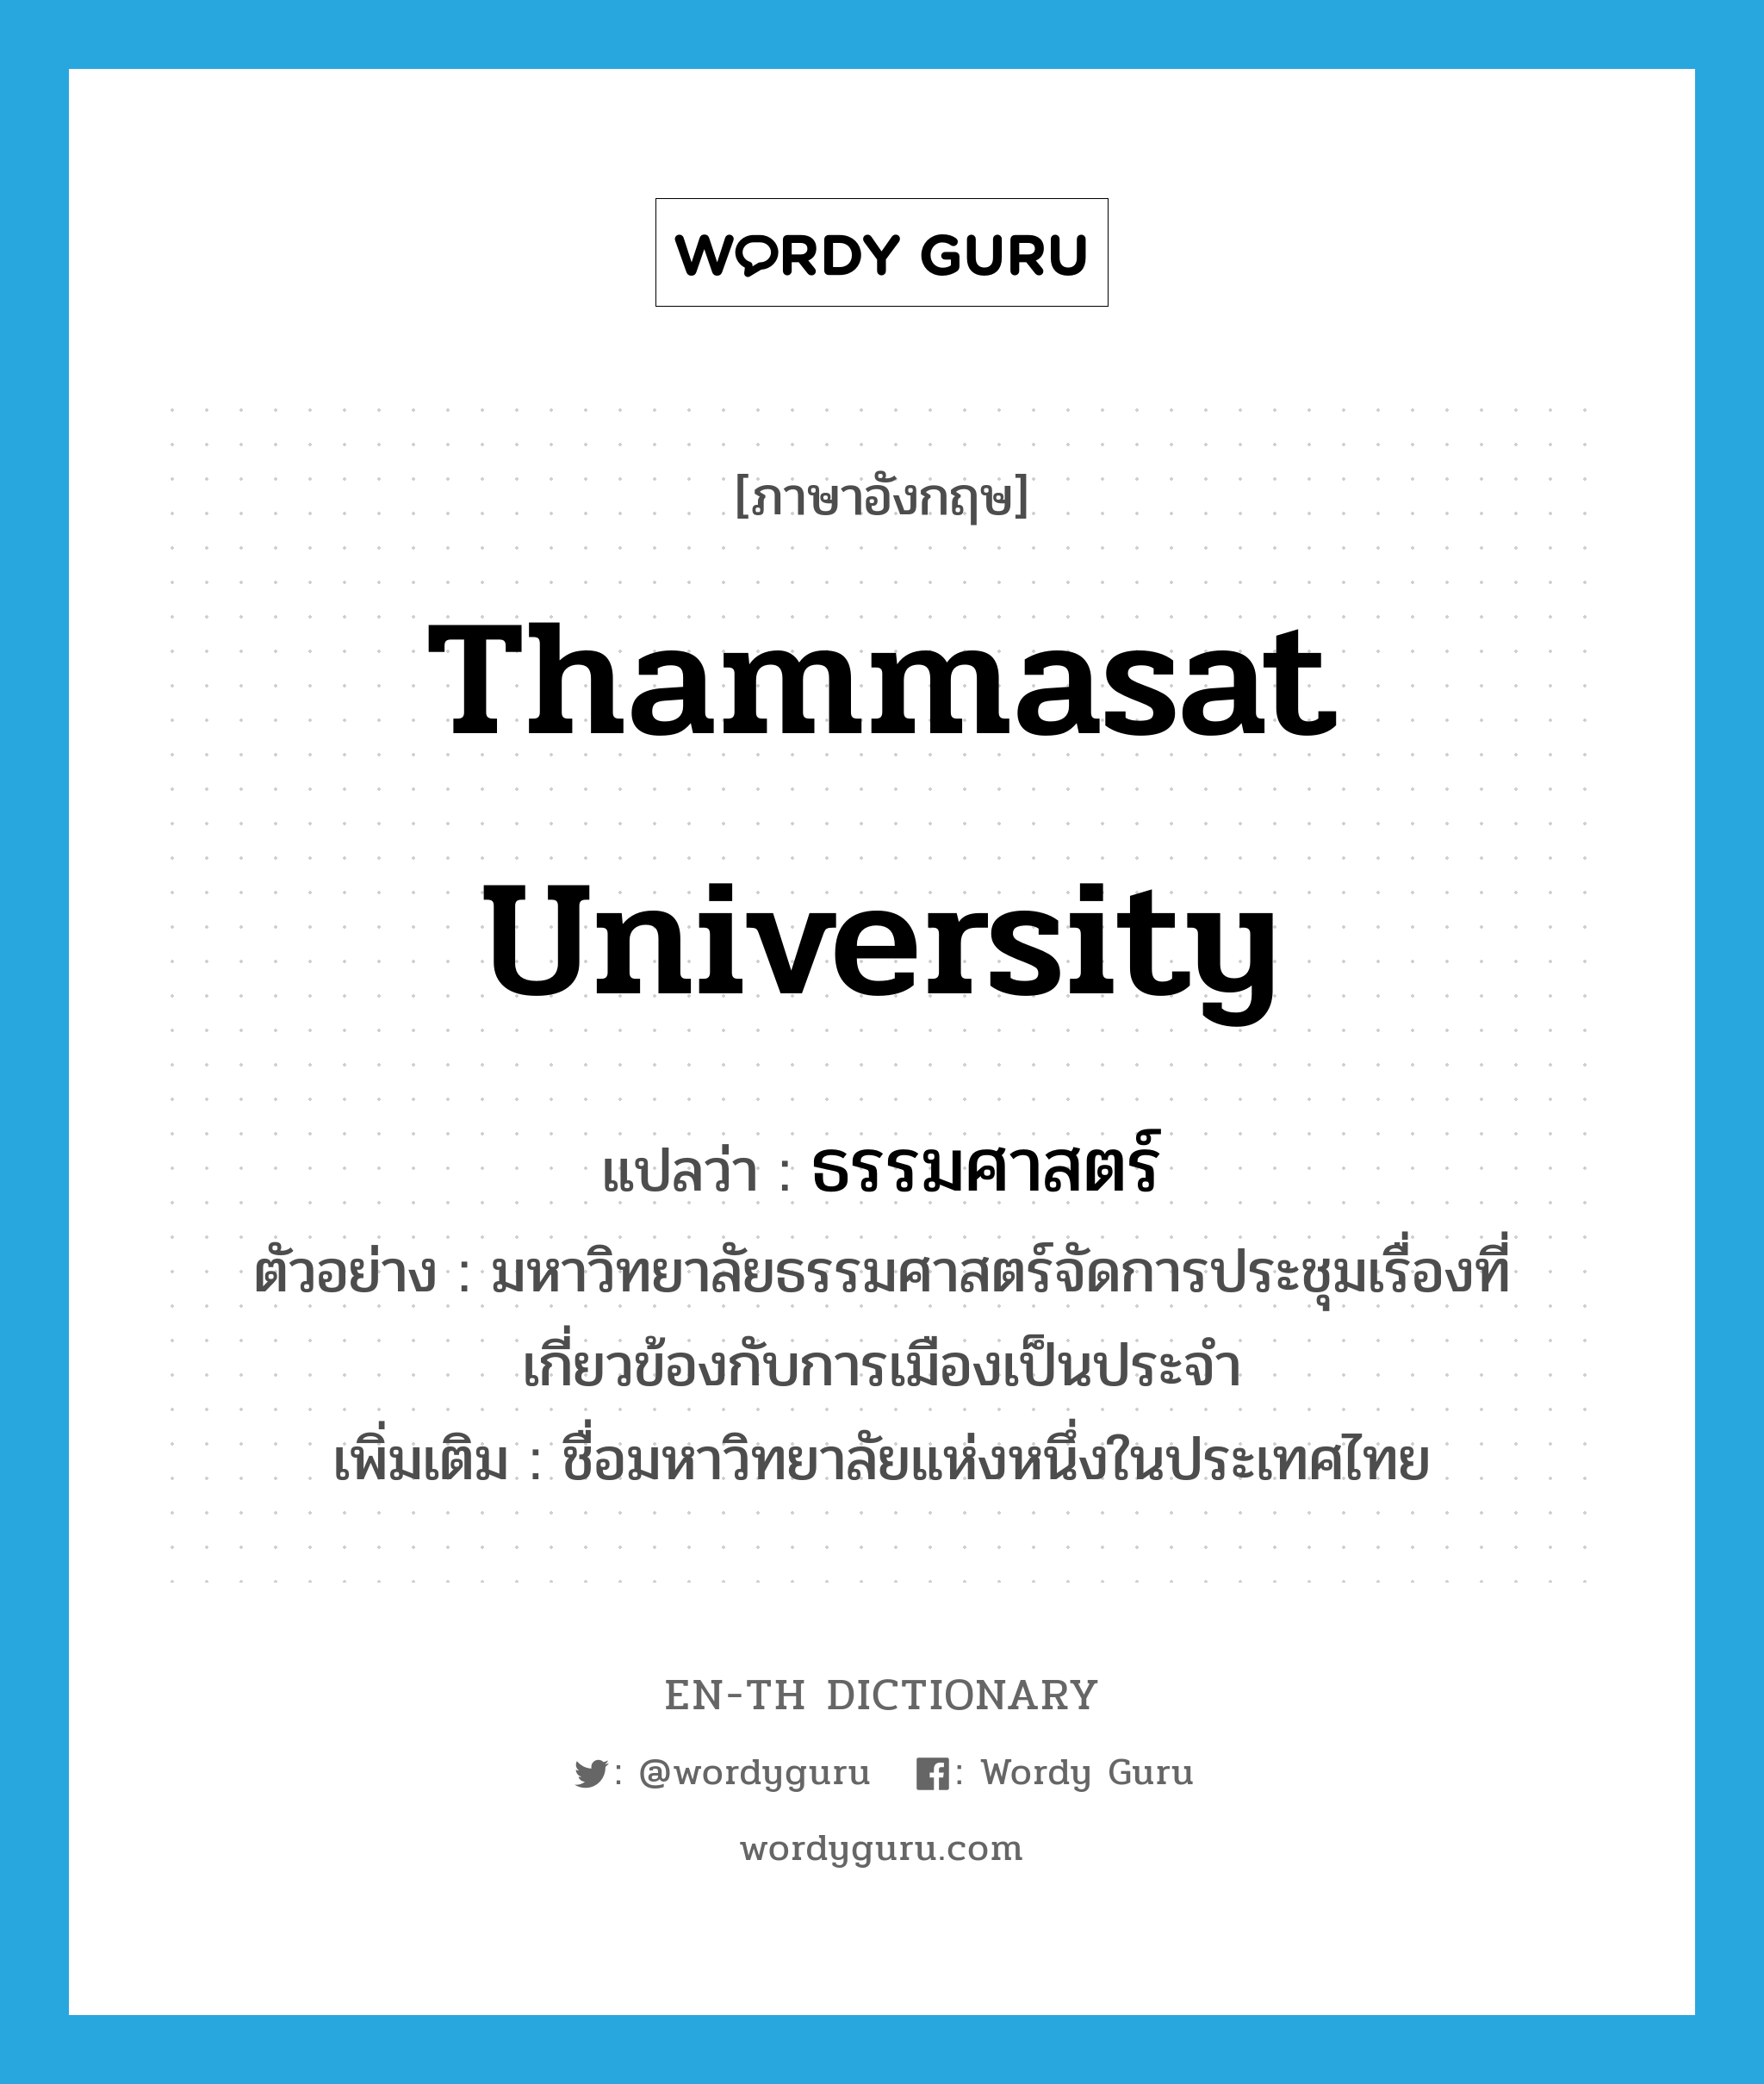 ธรรมศาสตร์ ภาษาอังกฤษ?, คำศัพท์ภาษาอังกฤษ ธรรมศาสตร์ แปลว่า Thammasat university ประเภท N ตัวอย่าง มหาวิทยาลัยธรรมศาสตร์จัดการประชุมเรื่องที่เกี่ยวข้องกับการเมืองเป็นประจำ เพิ่มเติม ชื่อมหาวิทยาลัยแห่งหนึ่งในประเทศไทย หมวด N